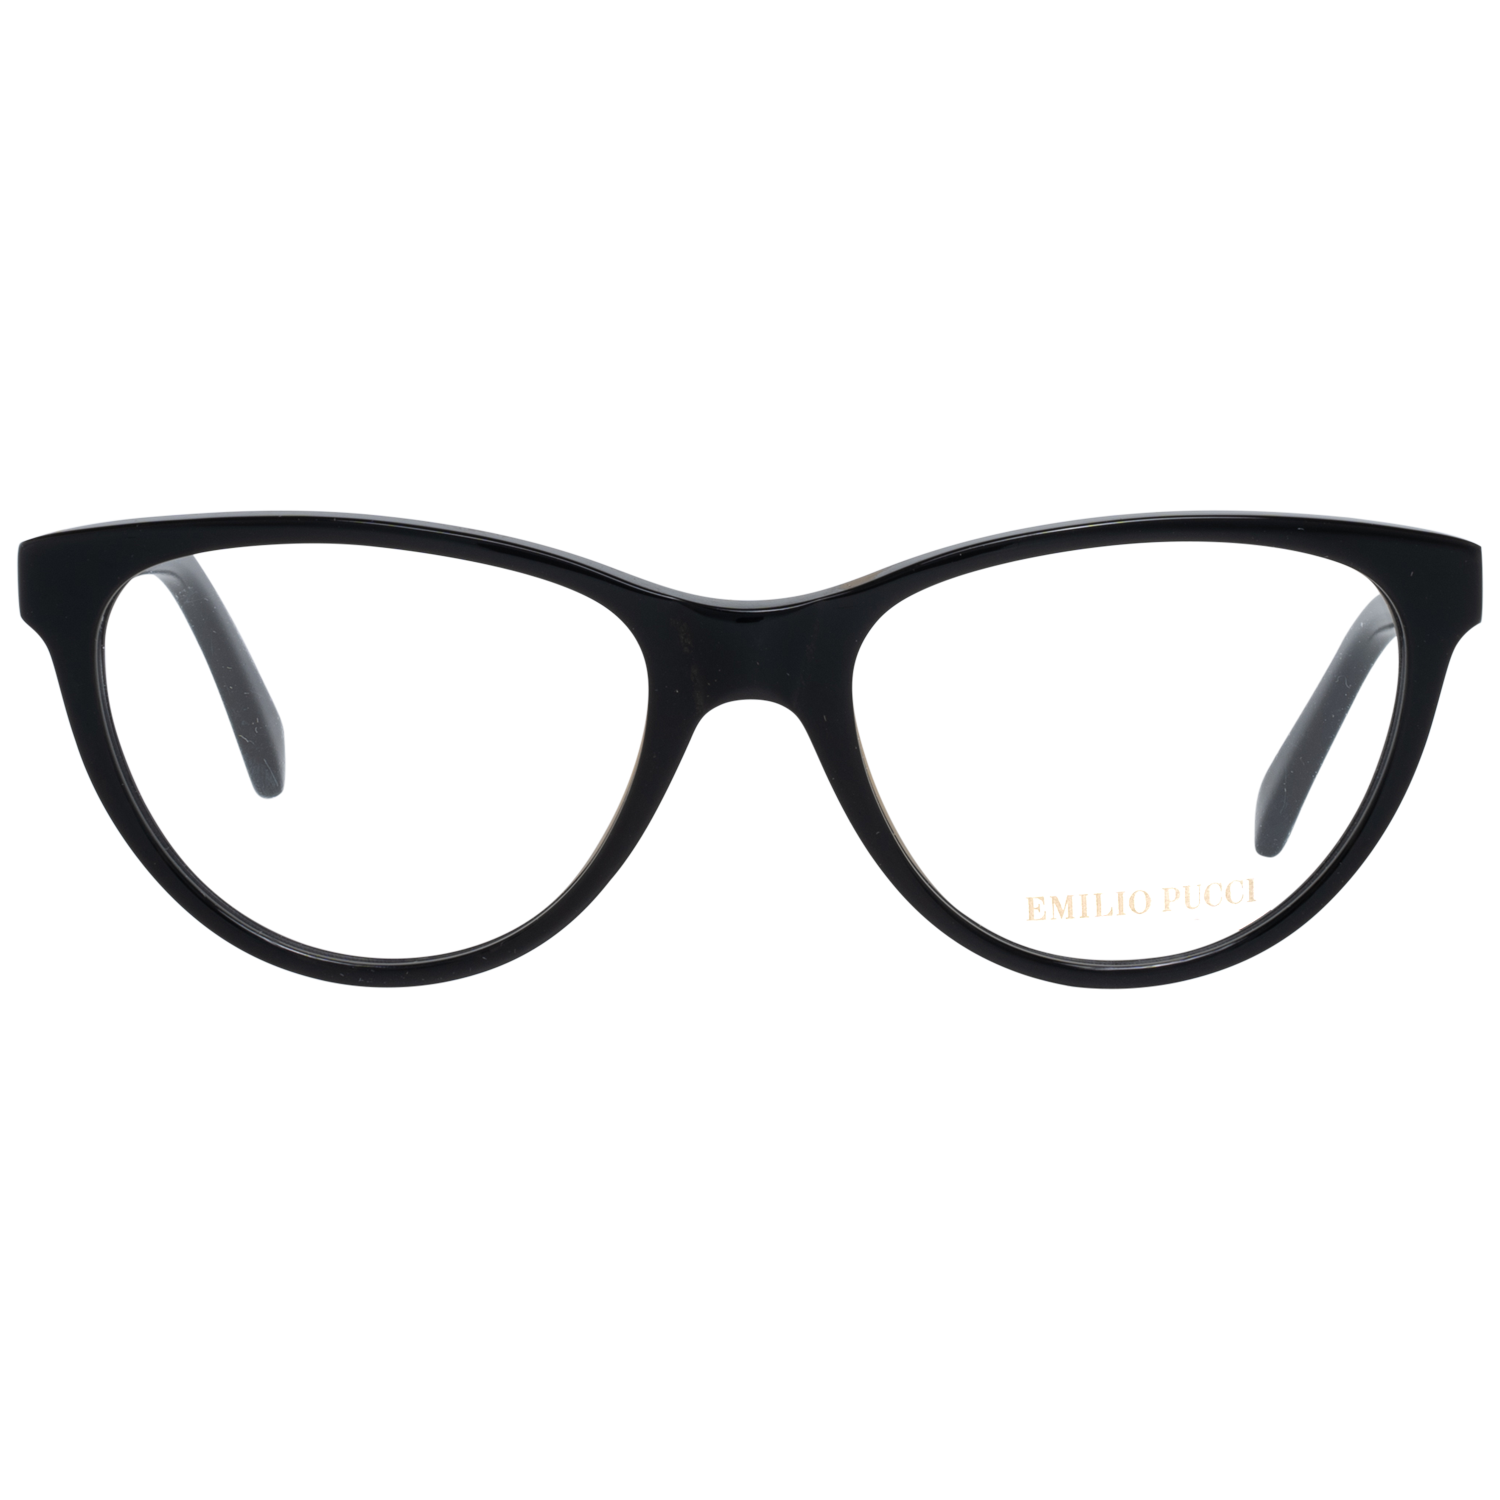 Emilio Pucci Frames Emilio Pucci Optical Frame EP5025 001 52 Eyeglasses Eyewear UK USA Australia 